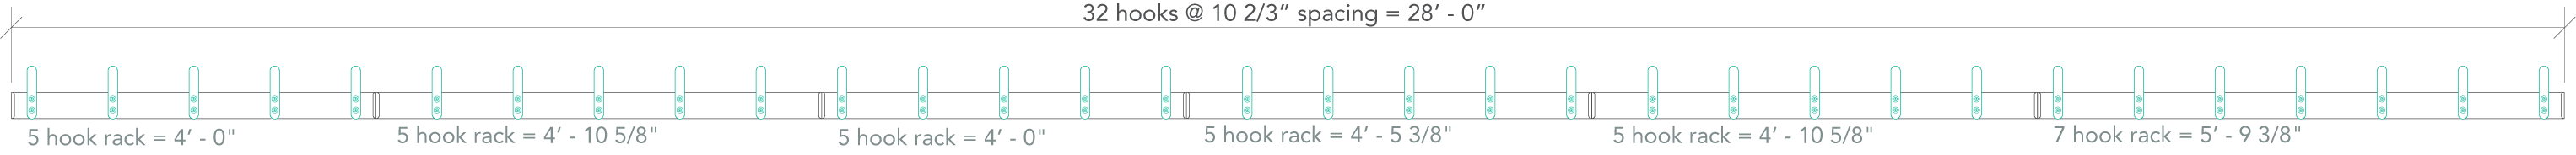 HangSafe Racks - HangSafe Hooks